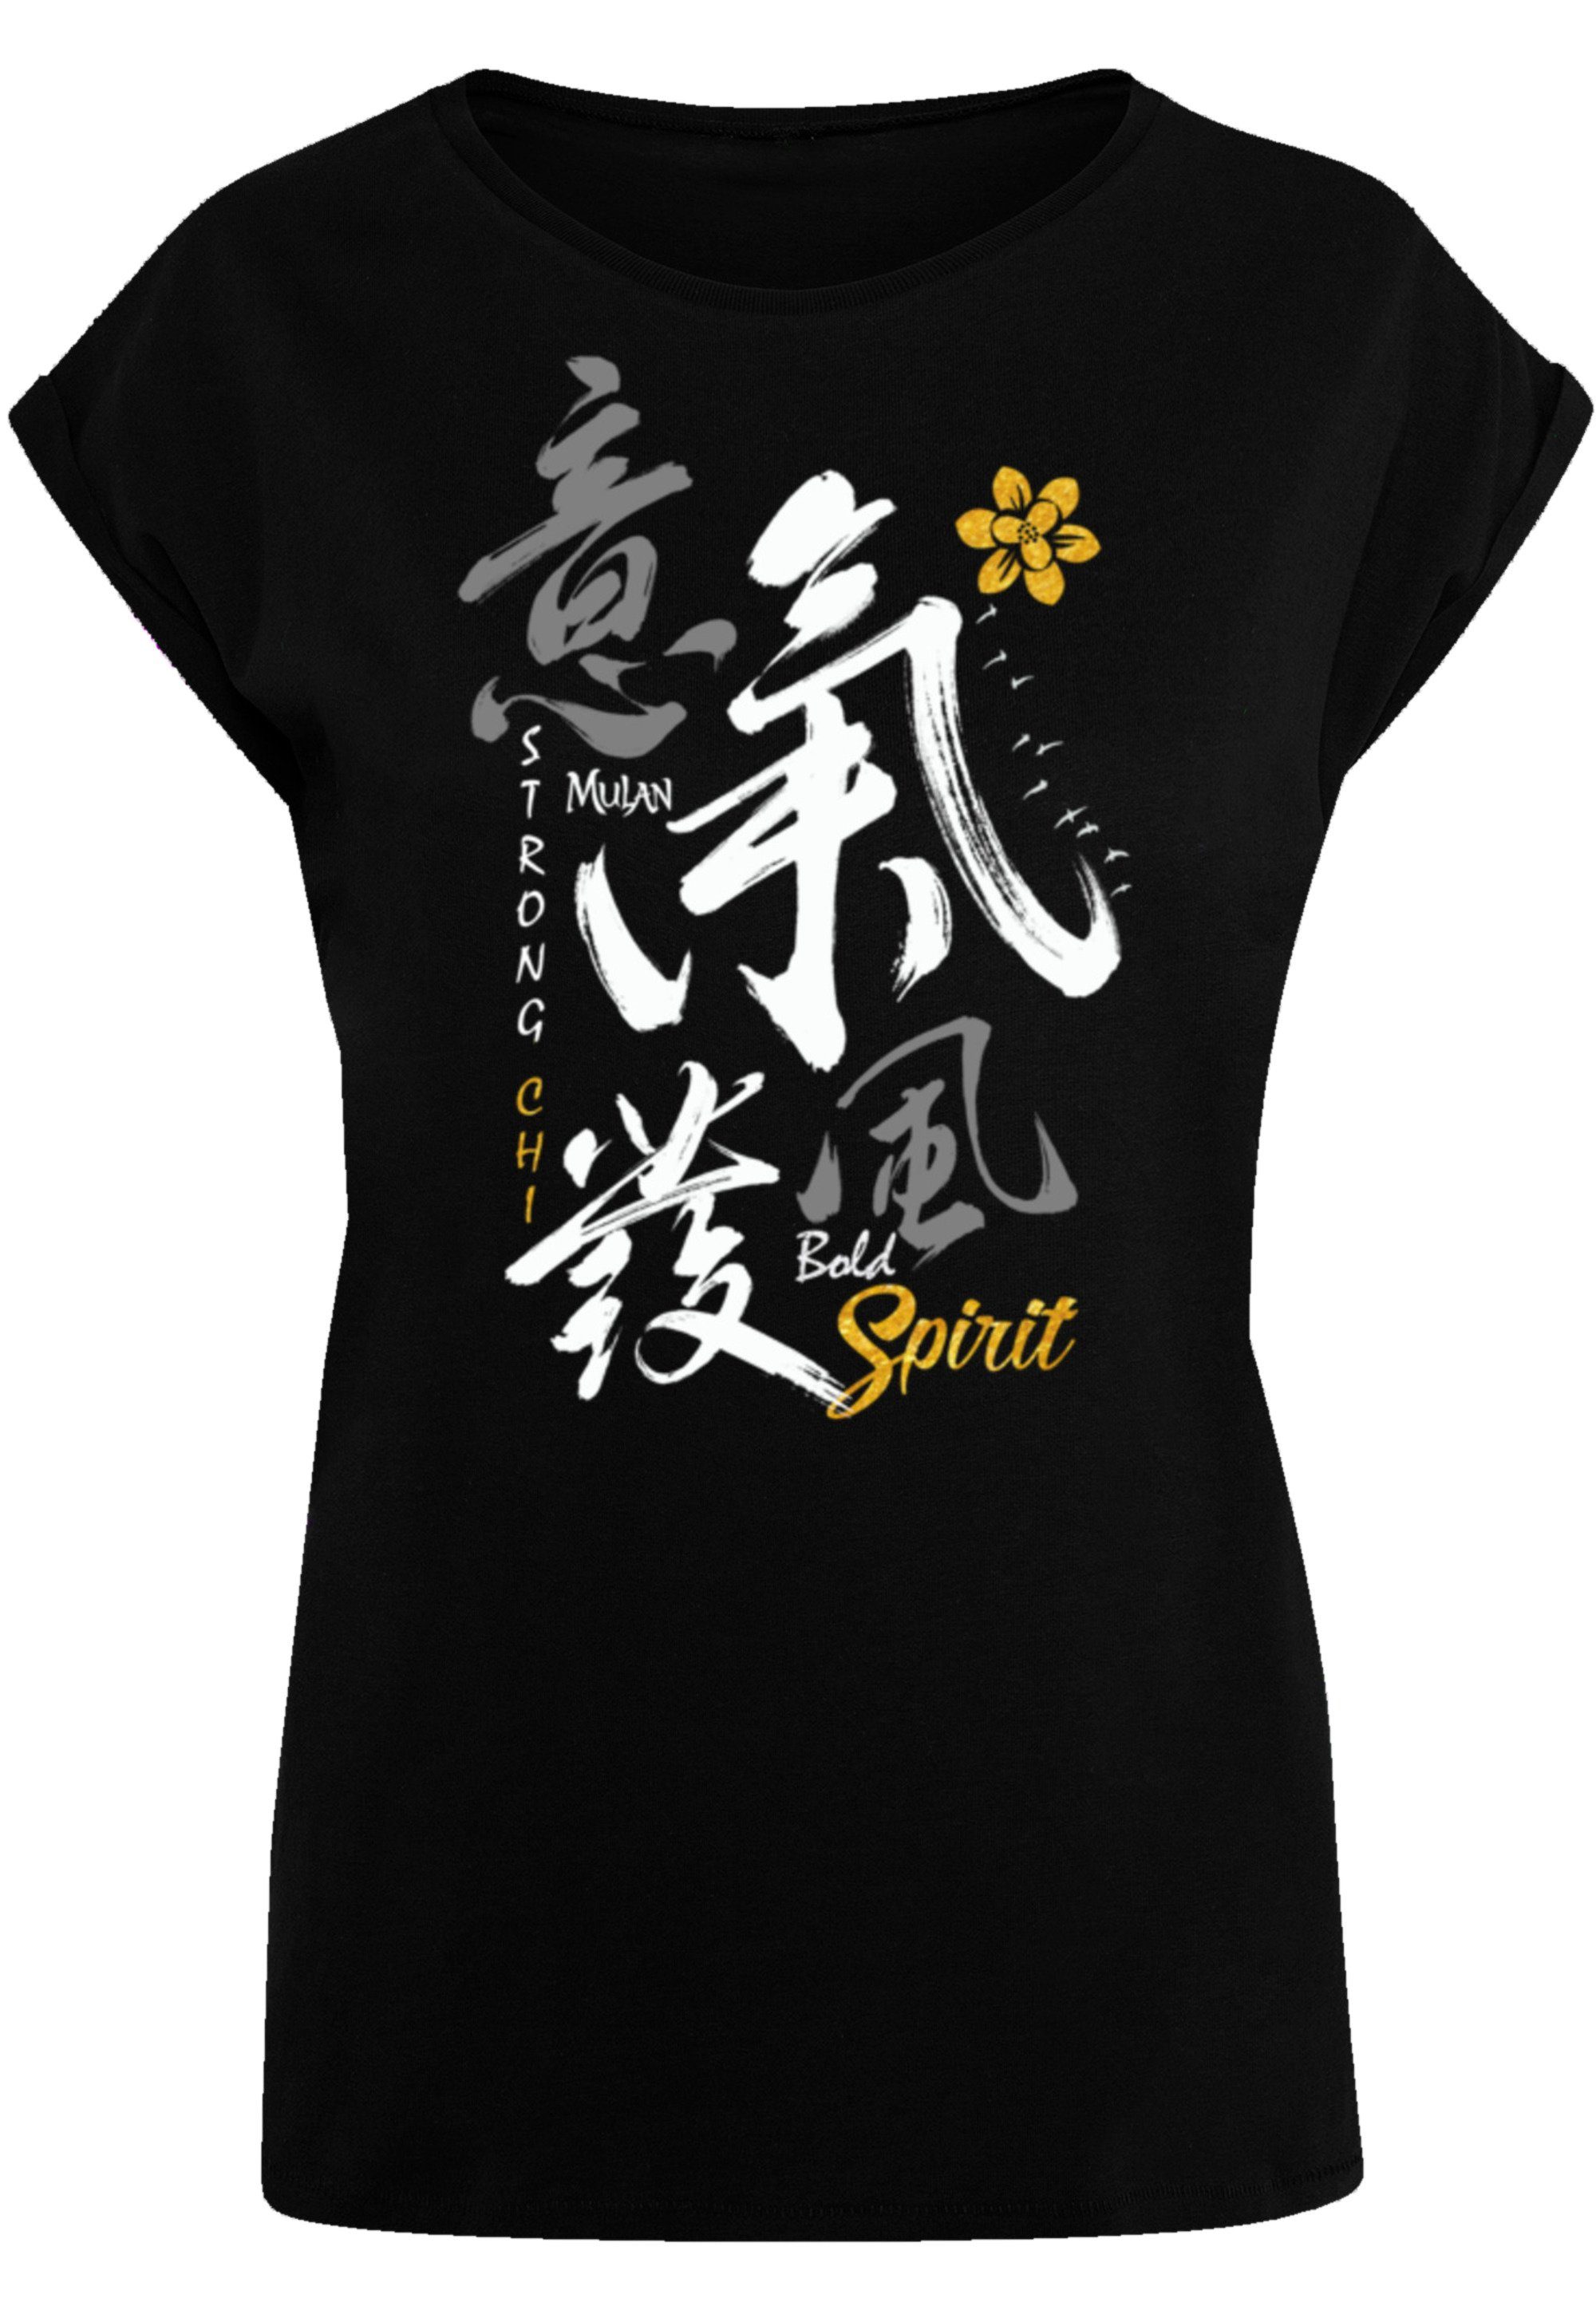 F4NT4STIC T-Shirt Disney Mulan Bold Spirit Premium Qualität, Offiziell  lizenziertes Disney T-Shirt | T-Shirts